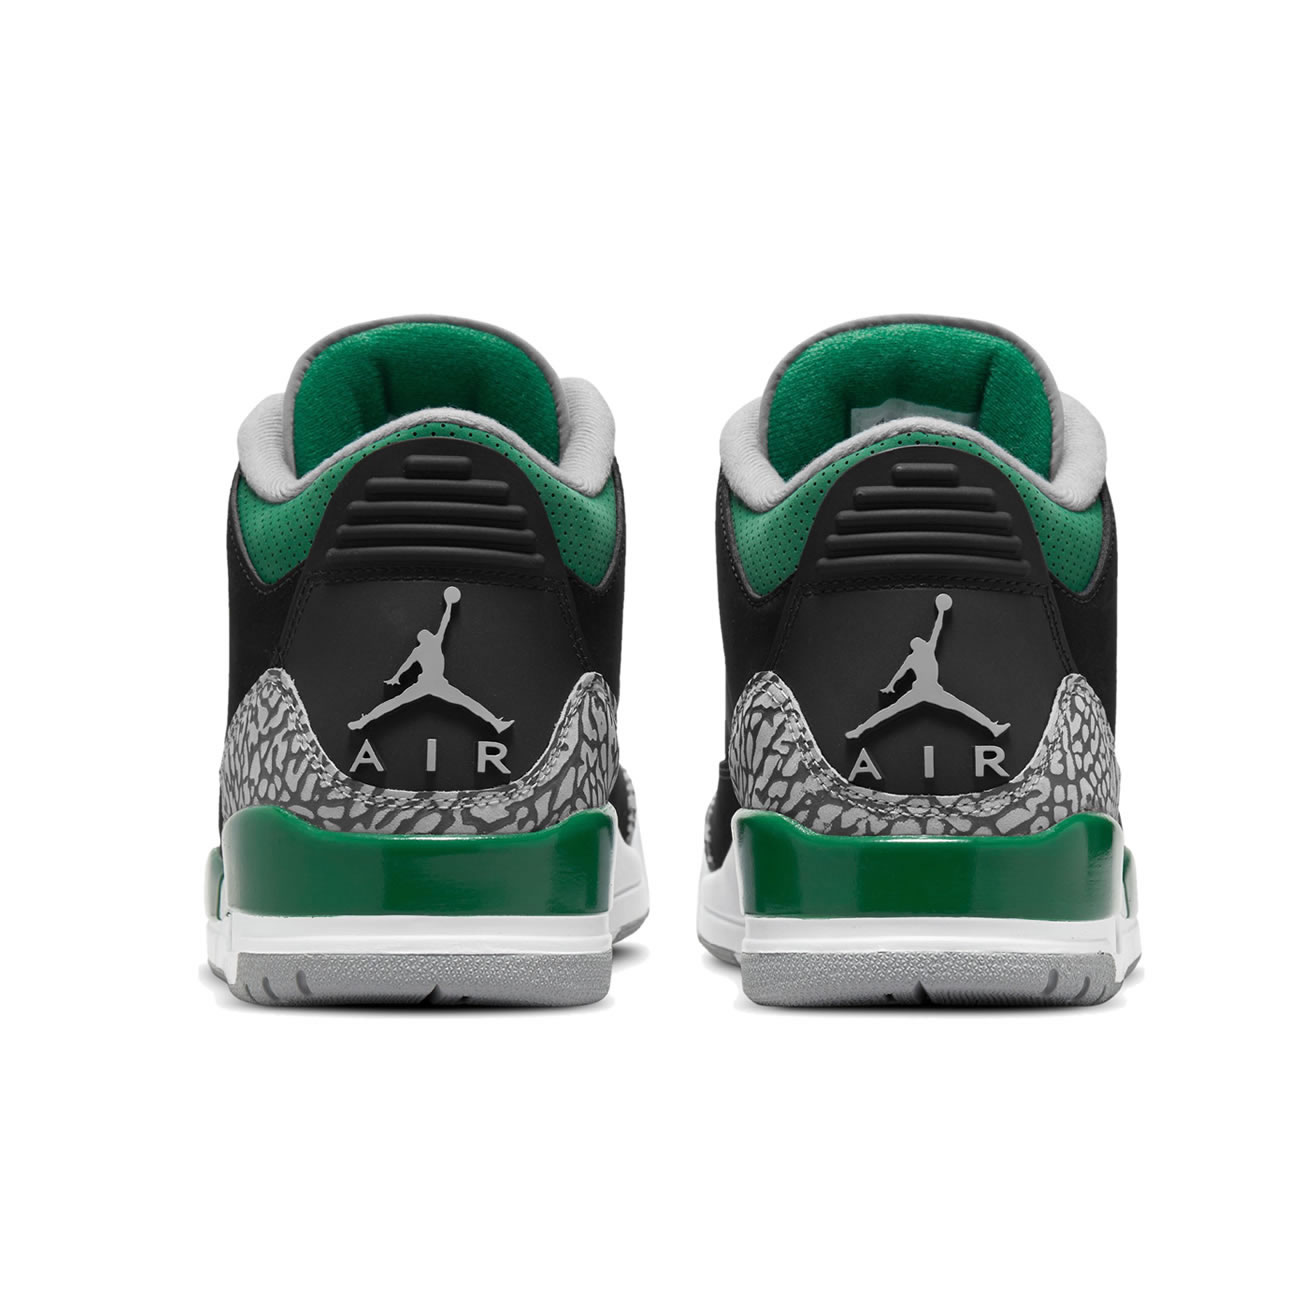 Air Jordan 3 Retro "Pine Green" CT8532-030